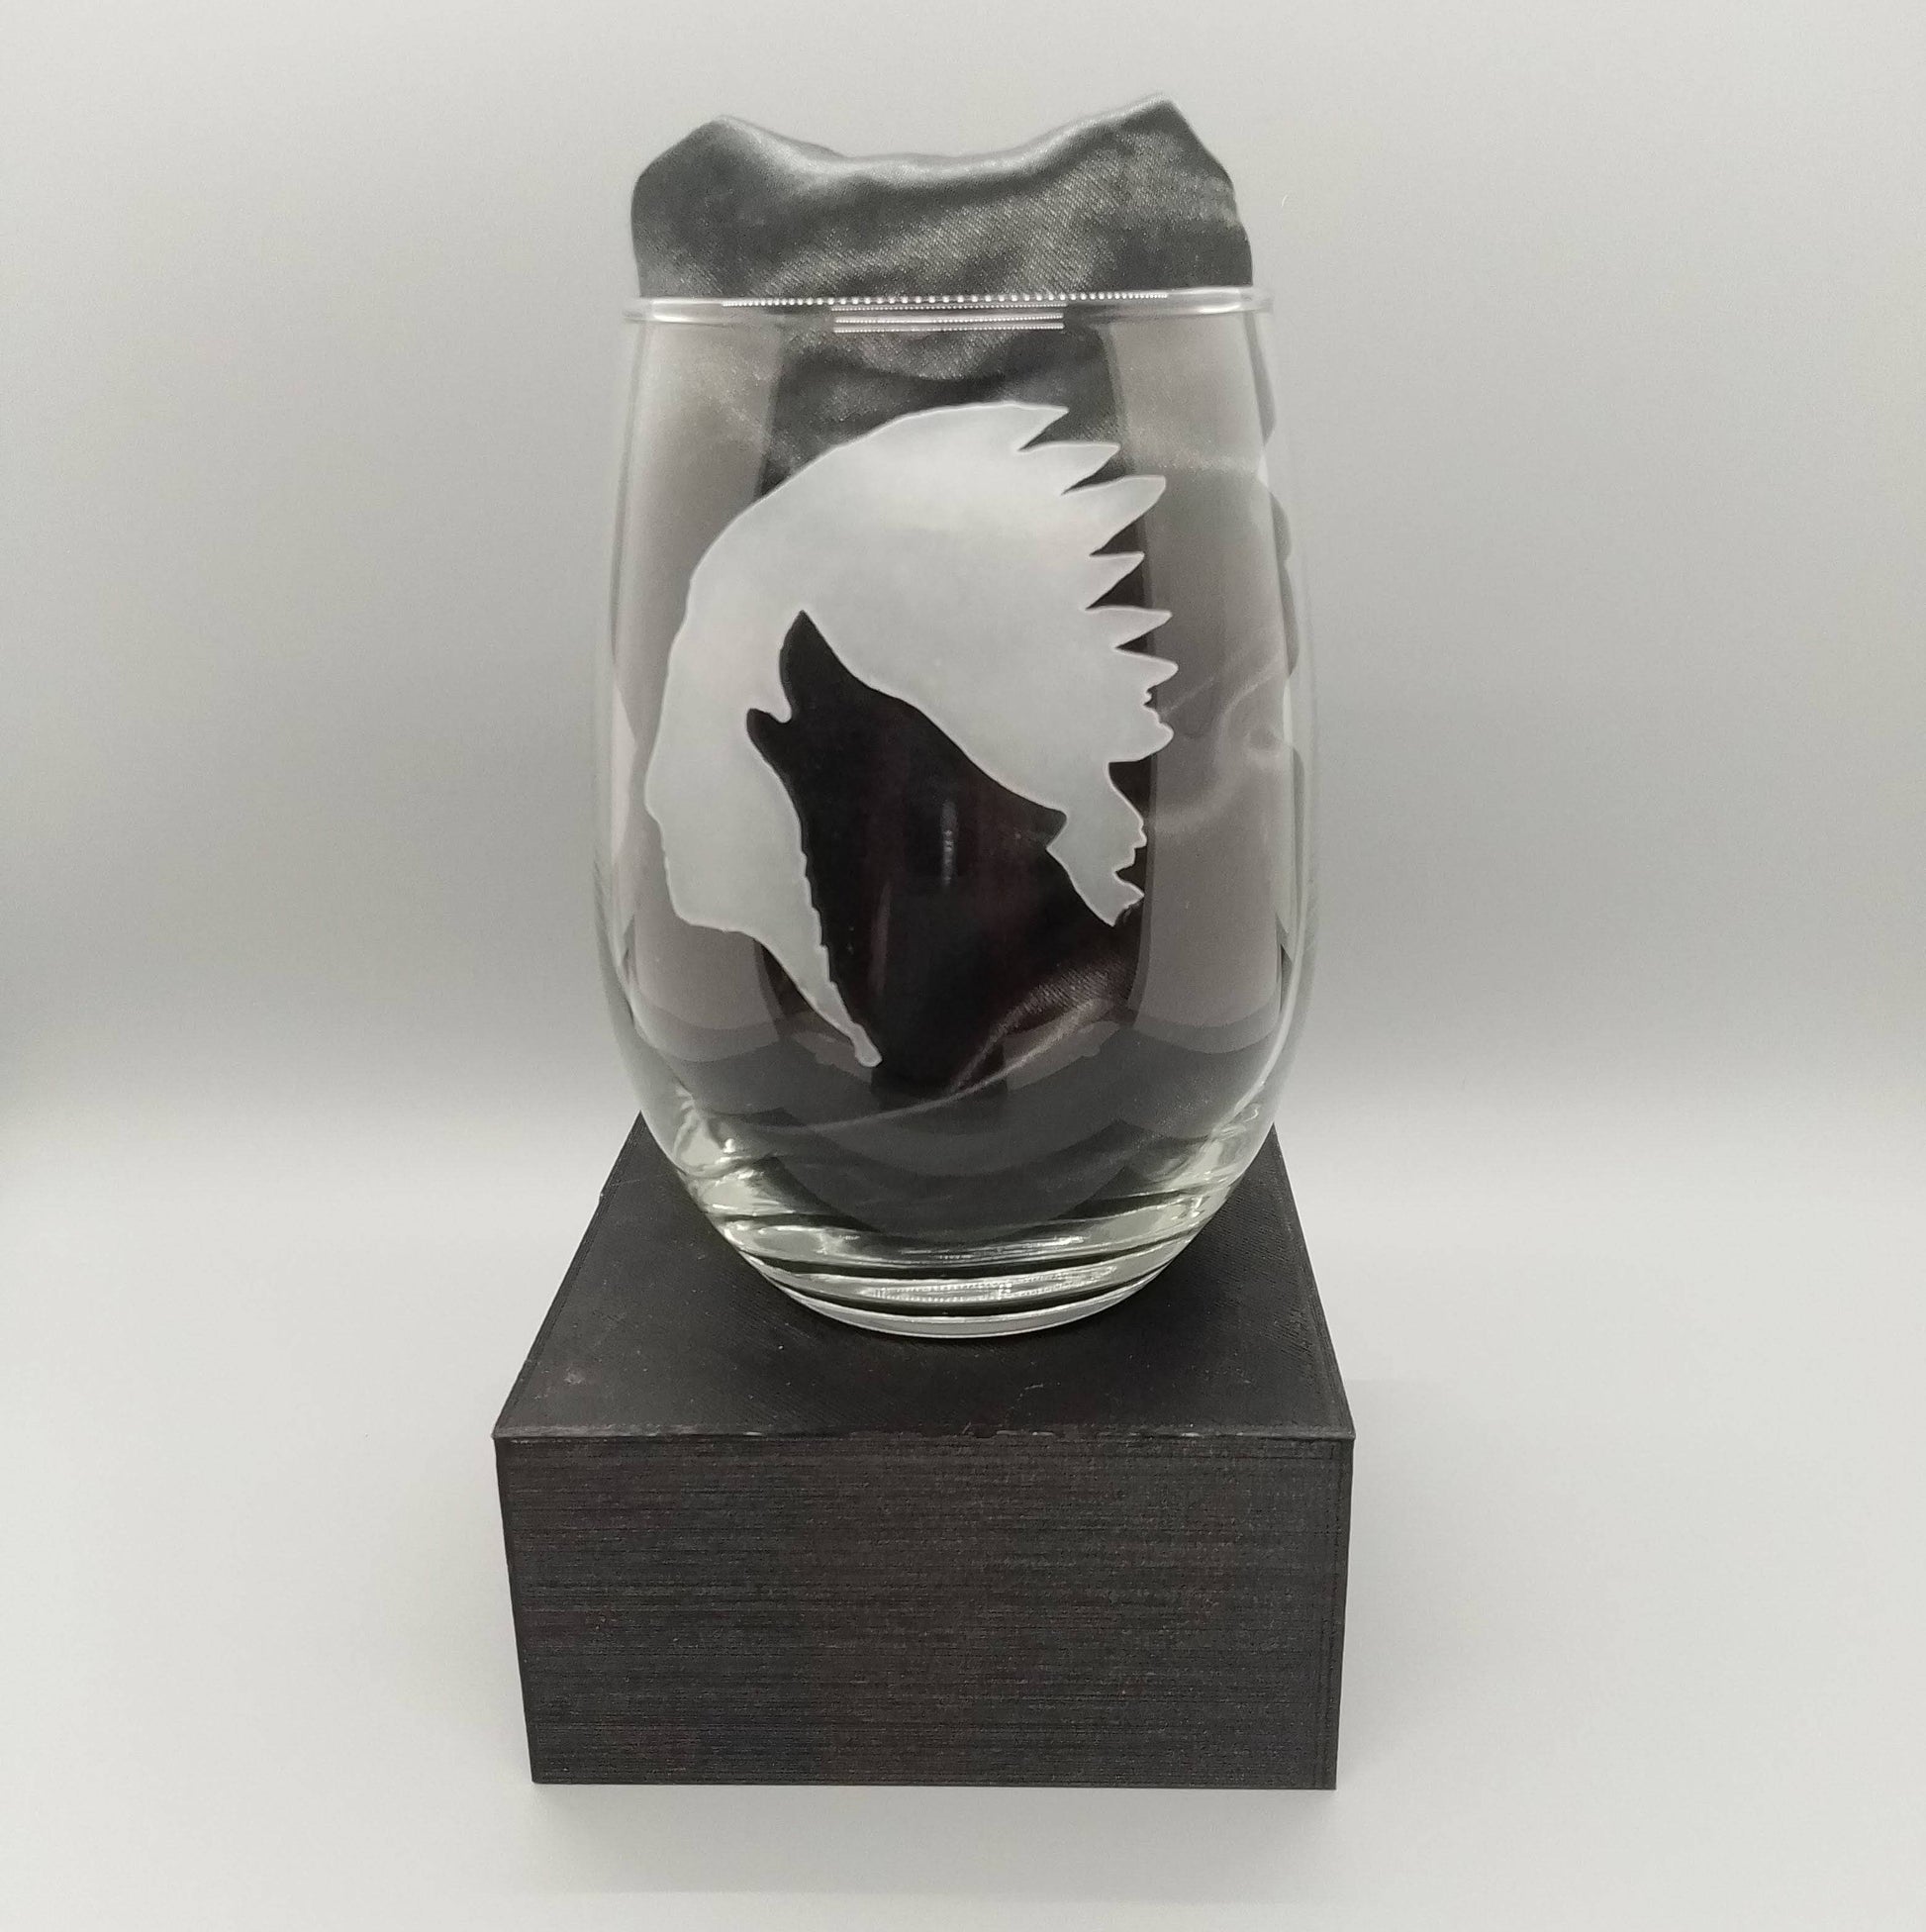 Native Wolf Sandblast Etched Stemless Wine Glass 20.5oz - Expressive DeZien 